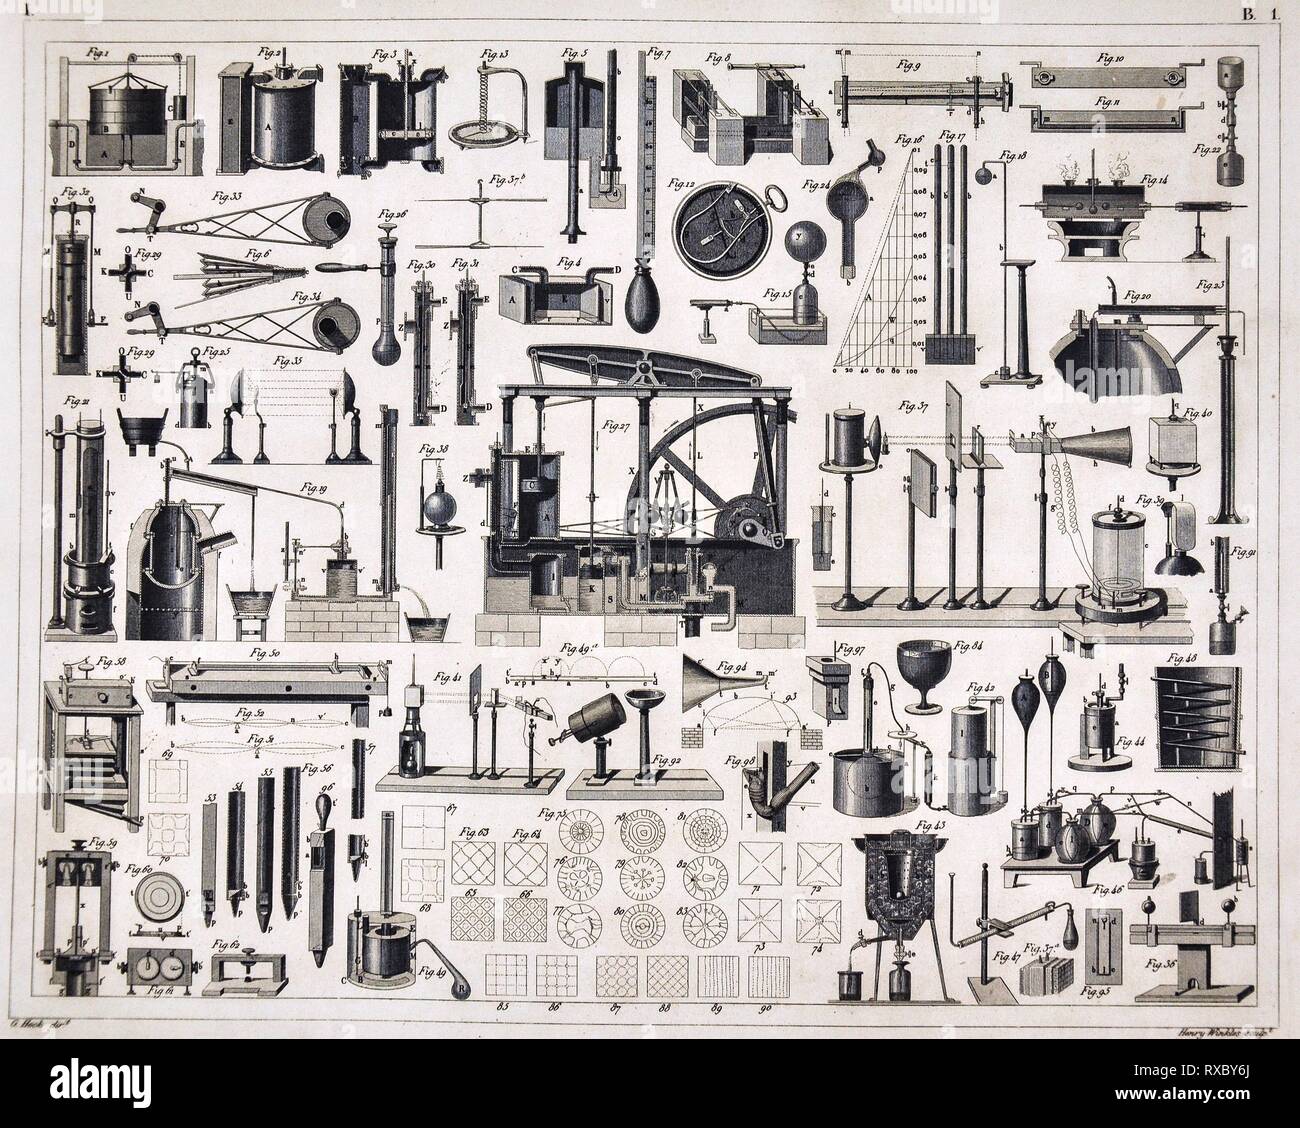 1849 Les photos de l'Atlas imprimer divers équipements de laboratoire pour des expériences scientifiques principalement et la distillation de pompage Banque D'Images